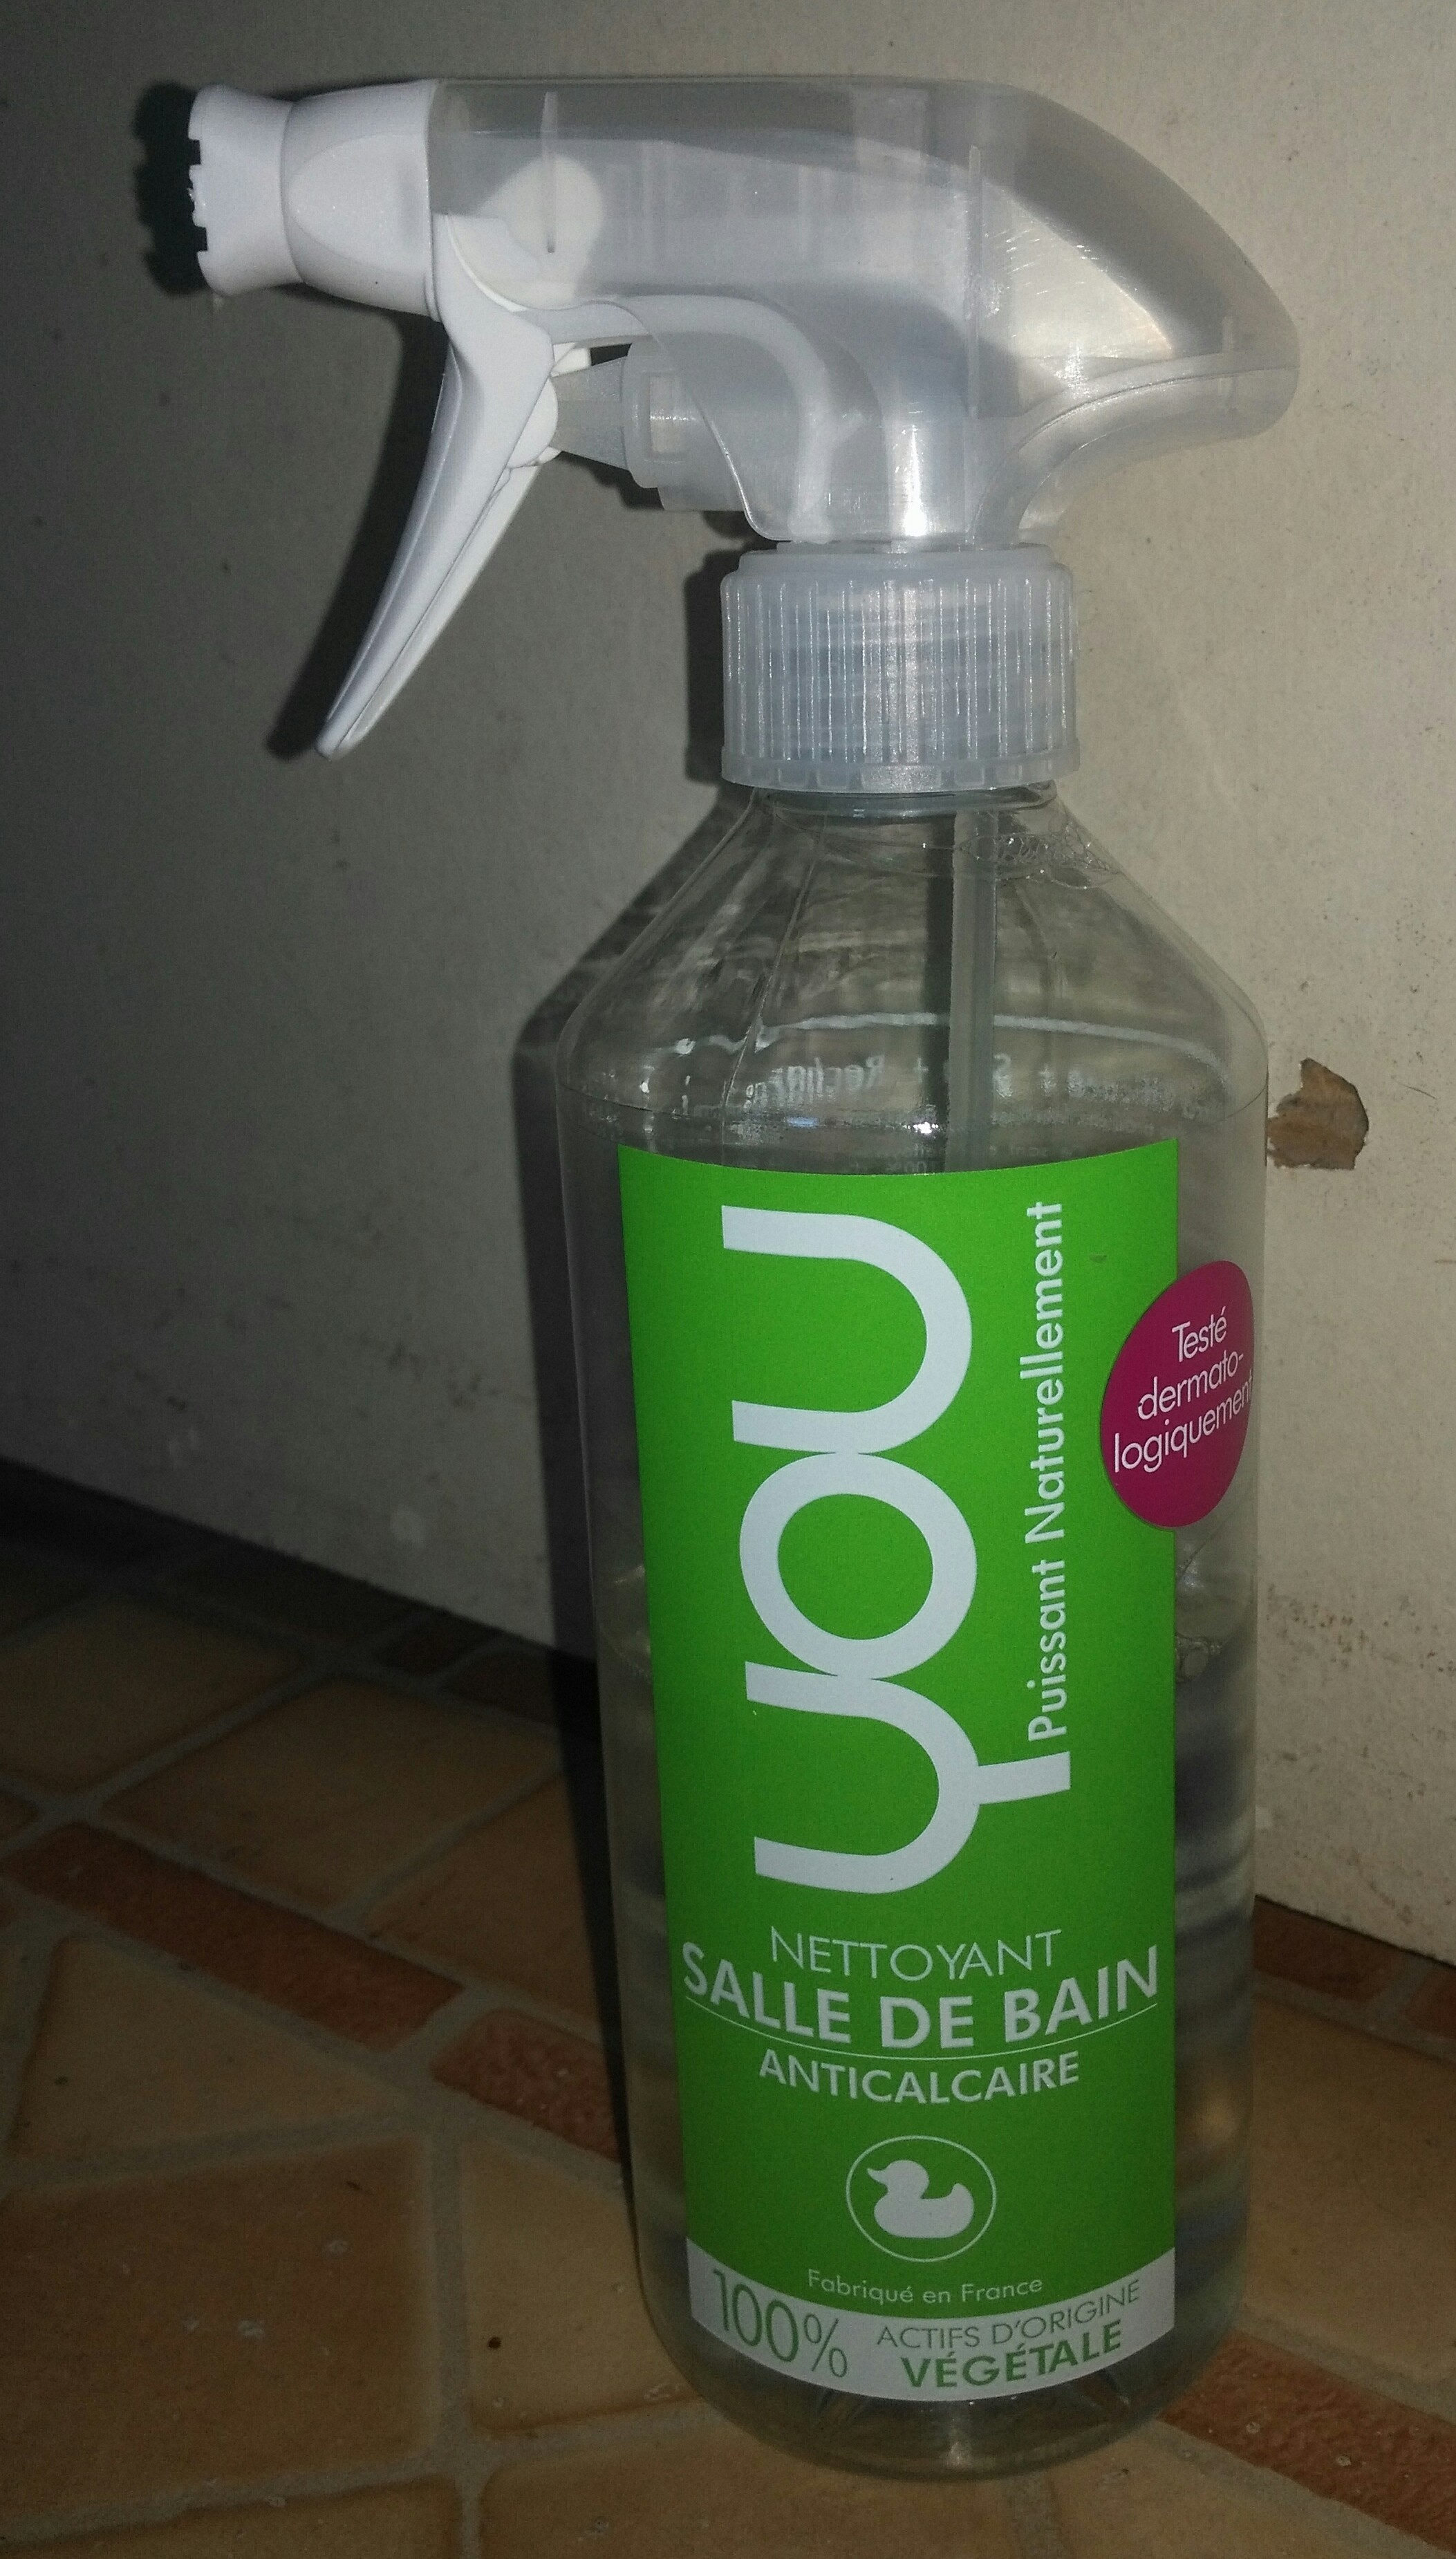 Nettoyant salle de bain anticalcaire - Product - fr